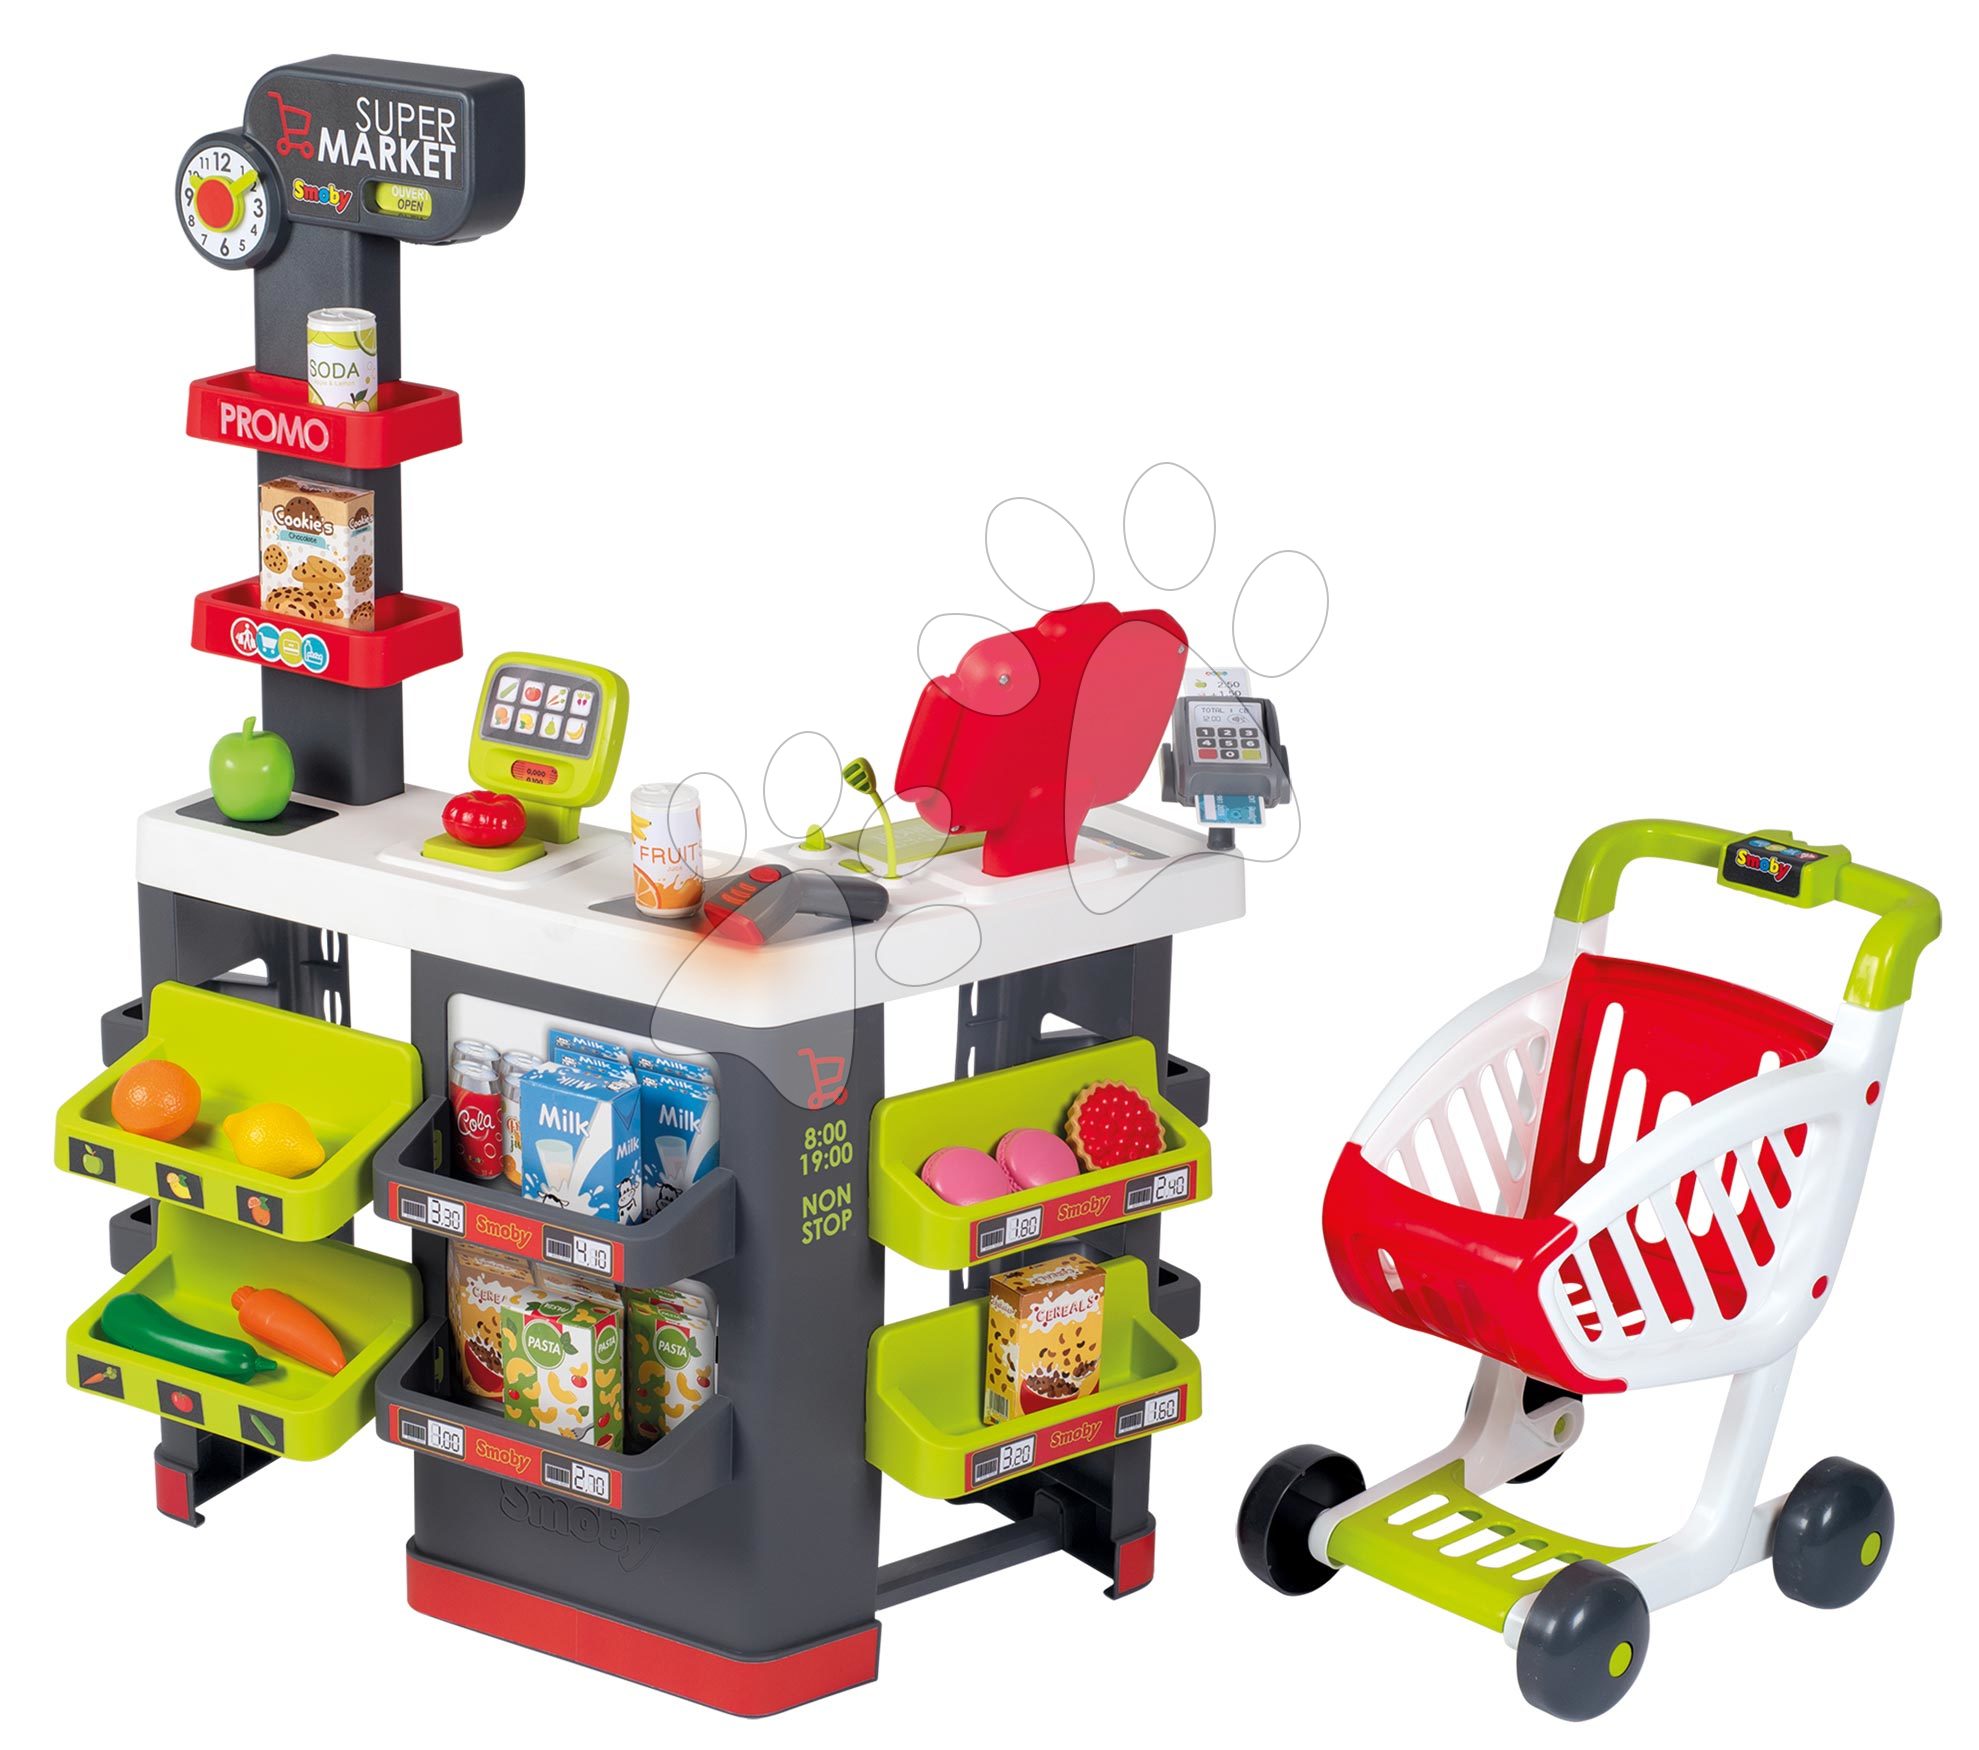 Obchody pro děti - Obchod elektronický s vozíkem Supermarket Smoby váha s funkční pokladnou a skenerem 42 doplňků